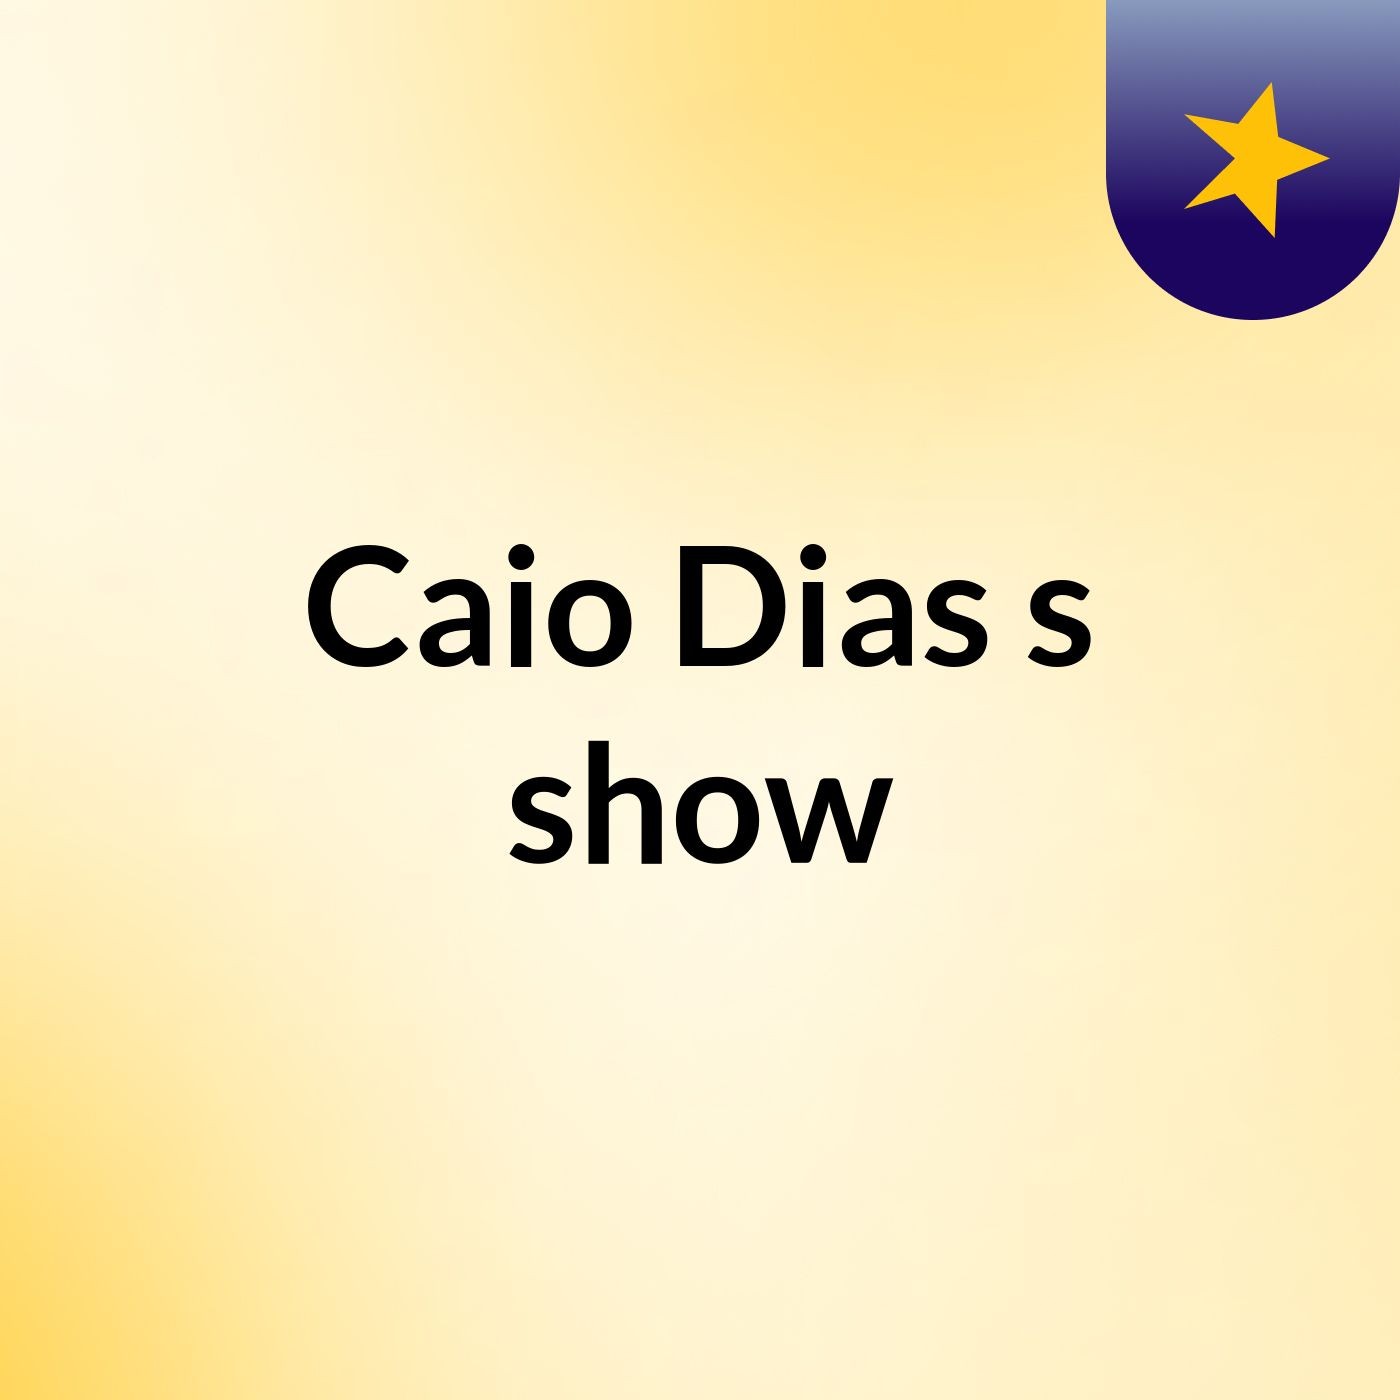 Caio Dias's show